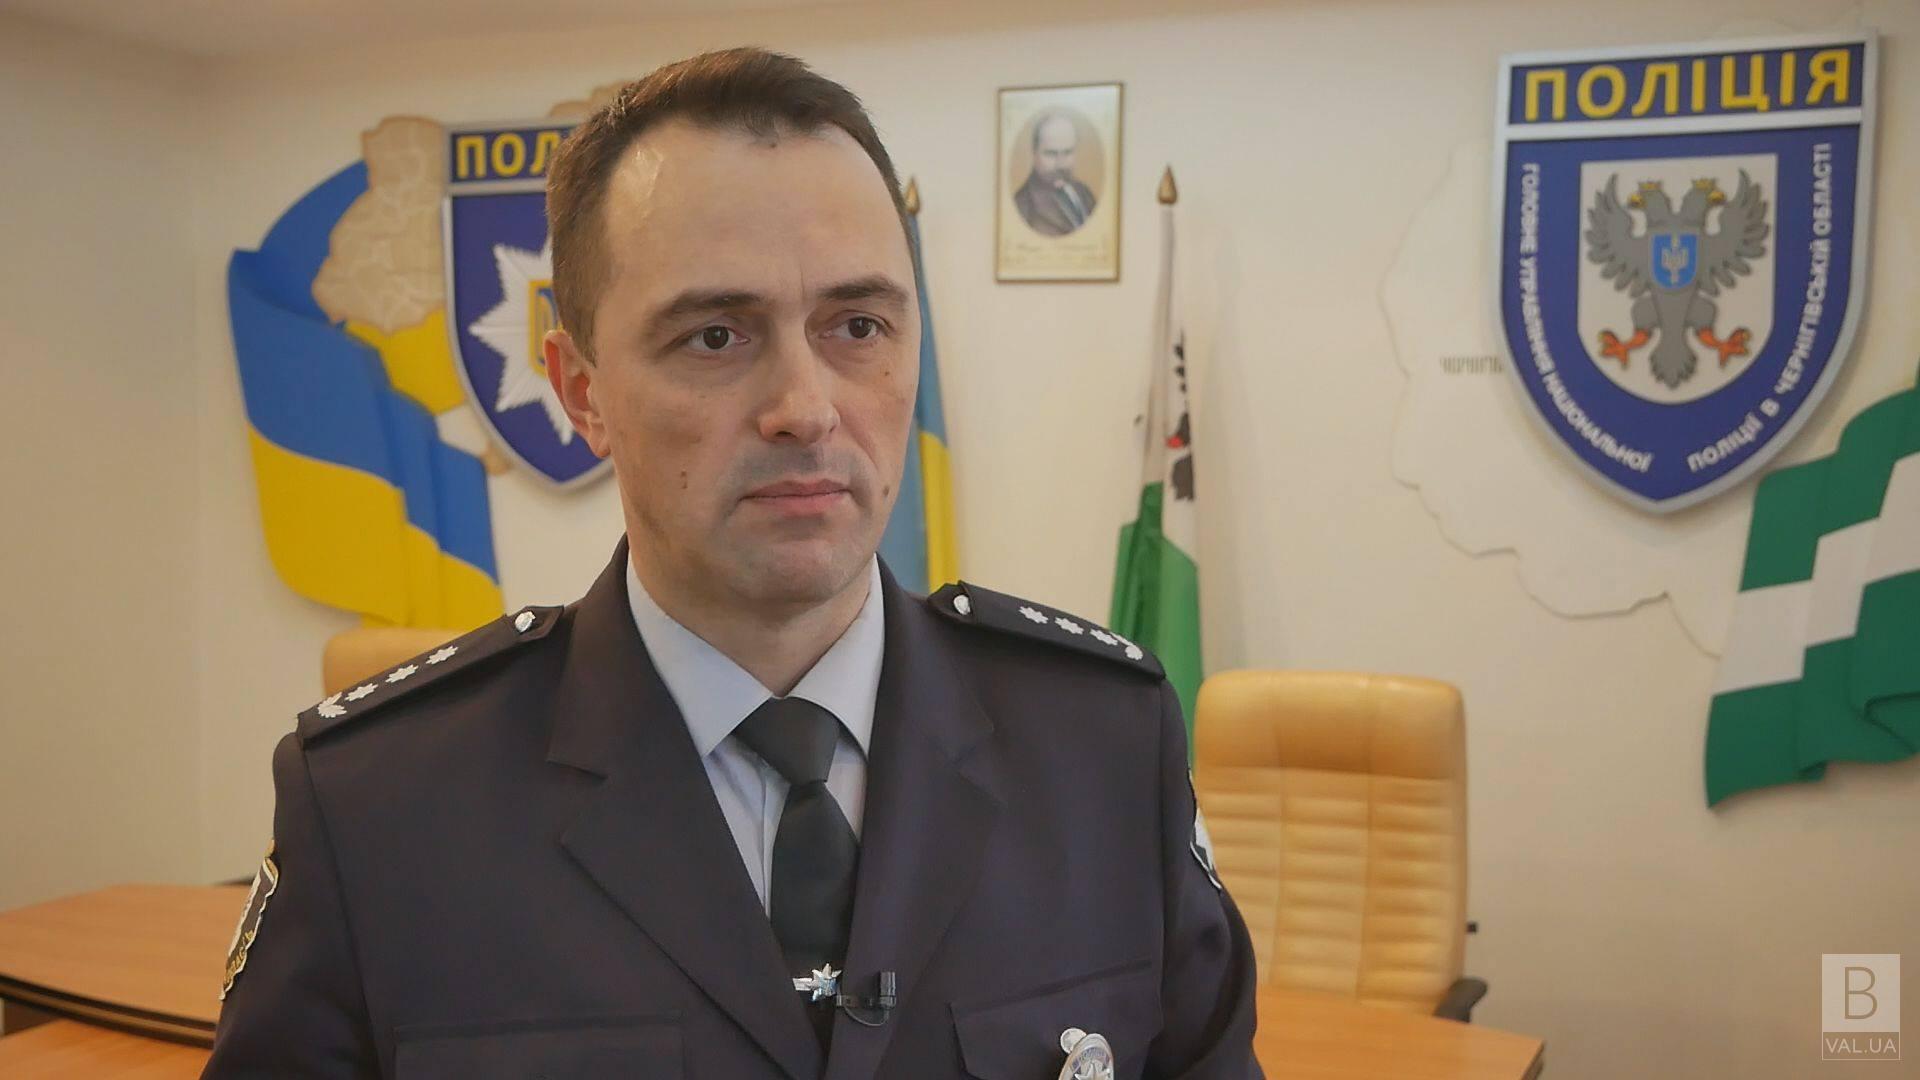 Поліція вилучила нелегальну зброю на Чернігівщині ВІДЕО